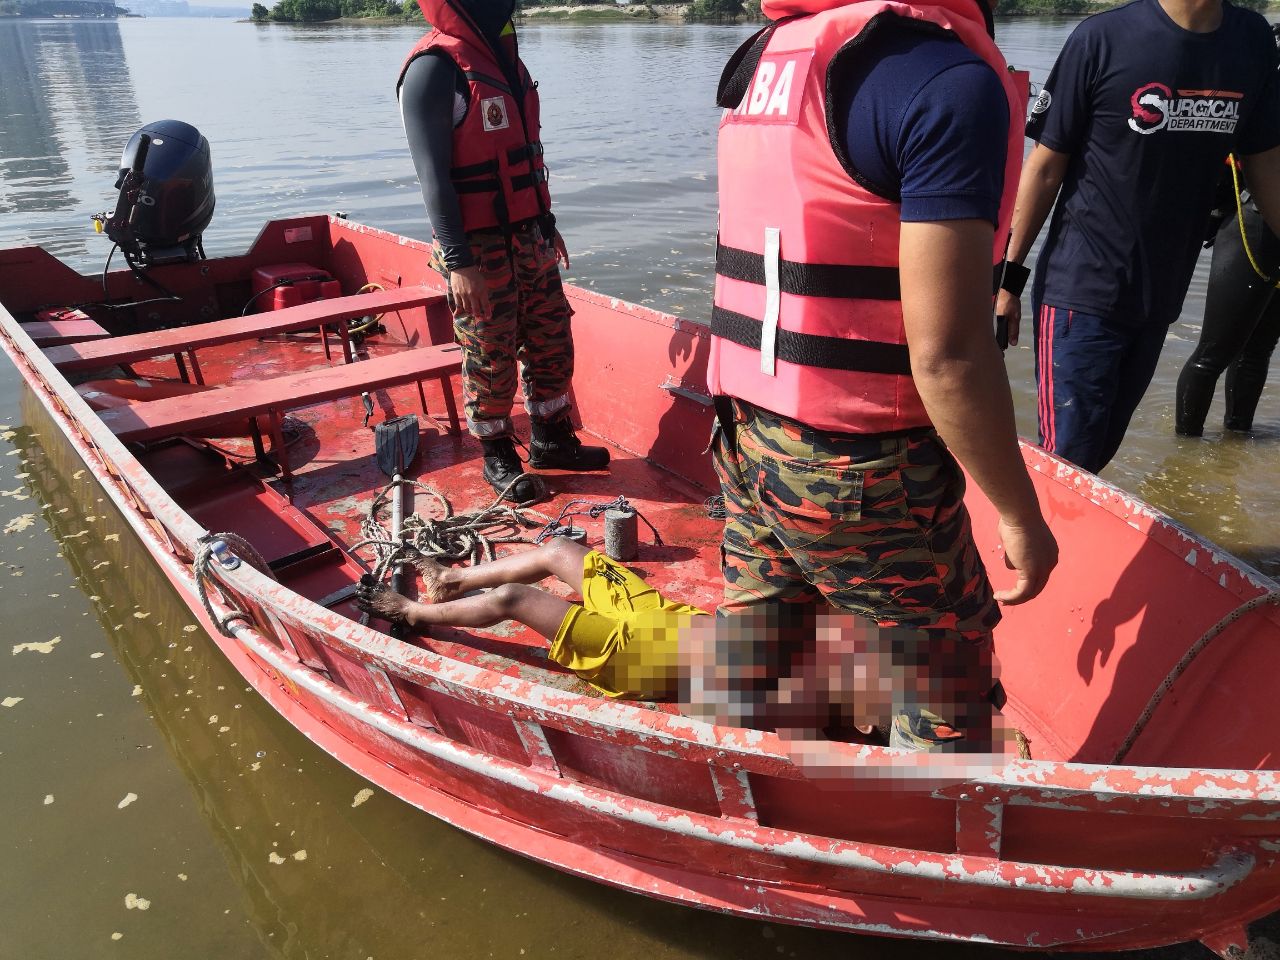 甘榜峇卡峇都河边游泳  2罗兴亚少年溺毙